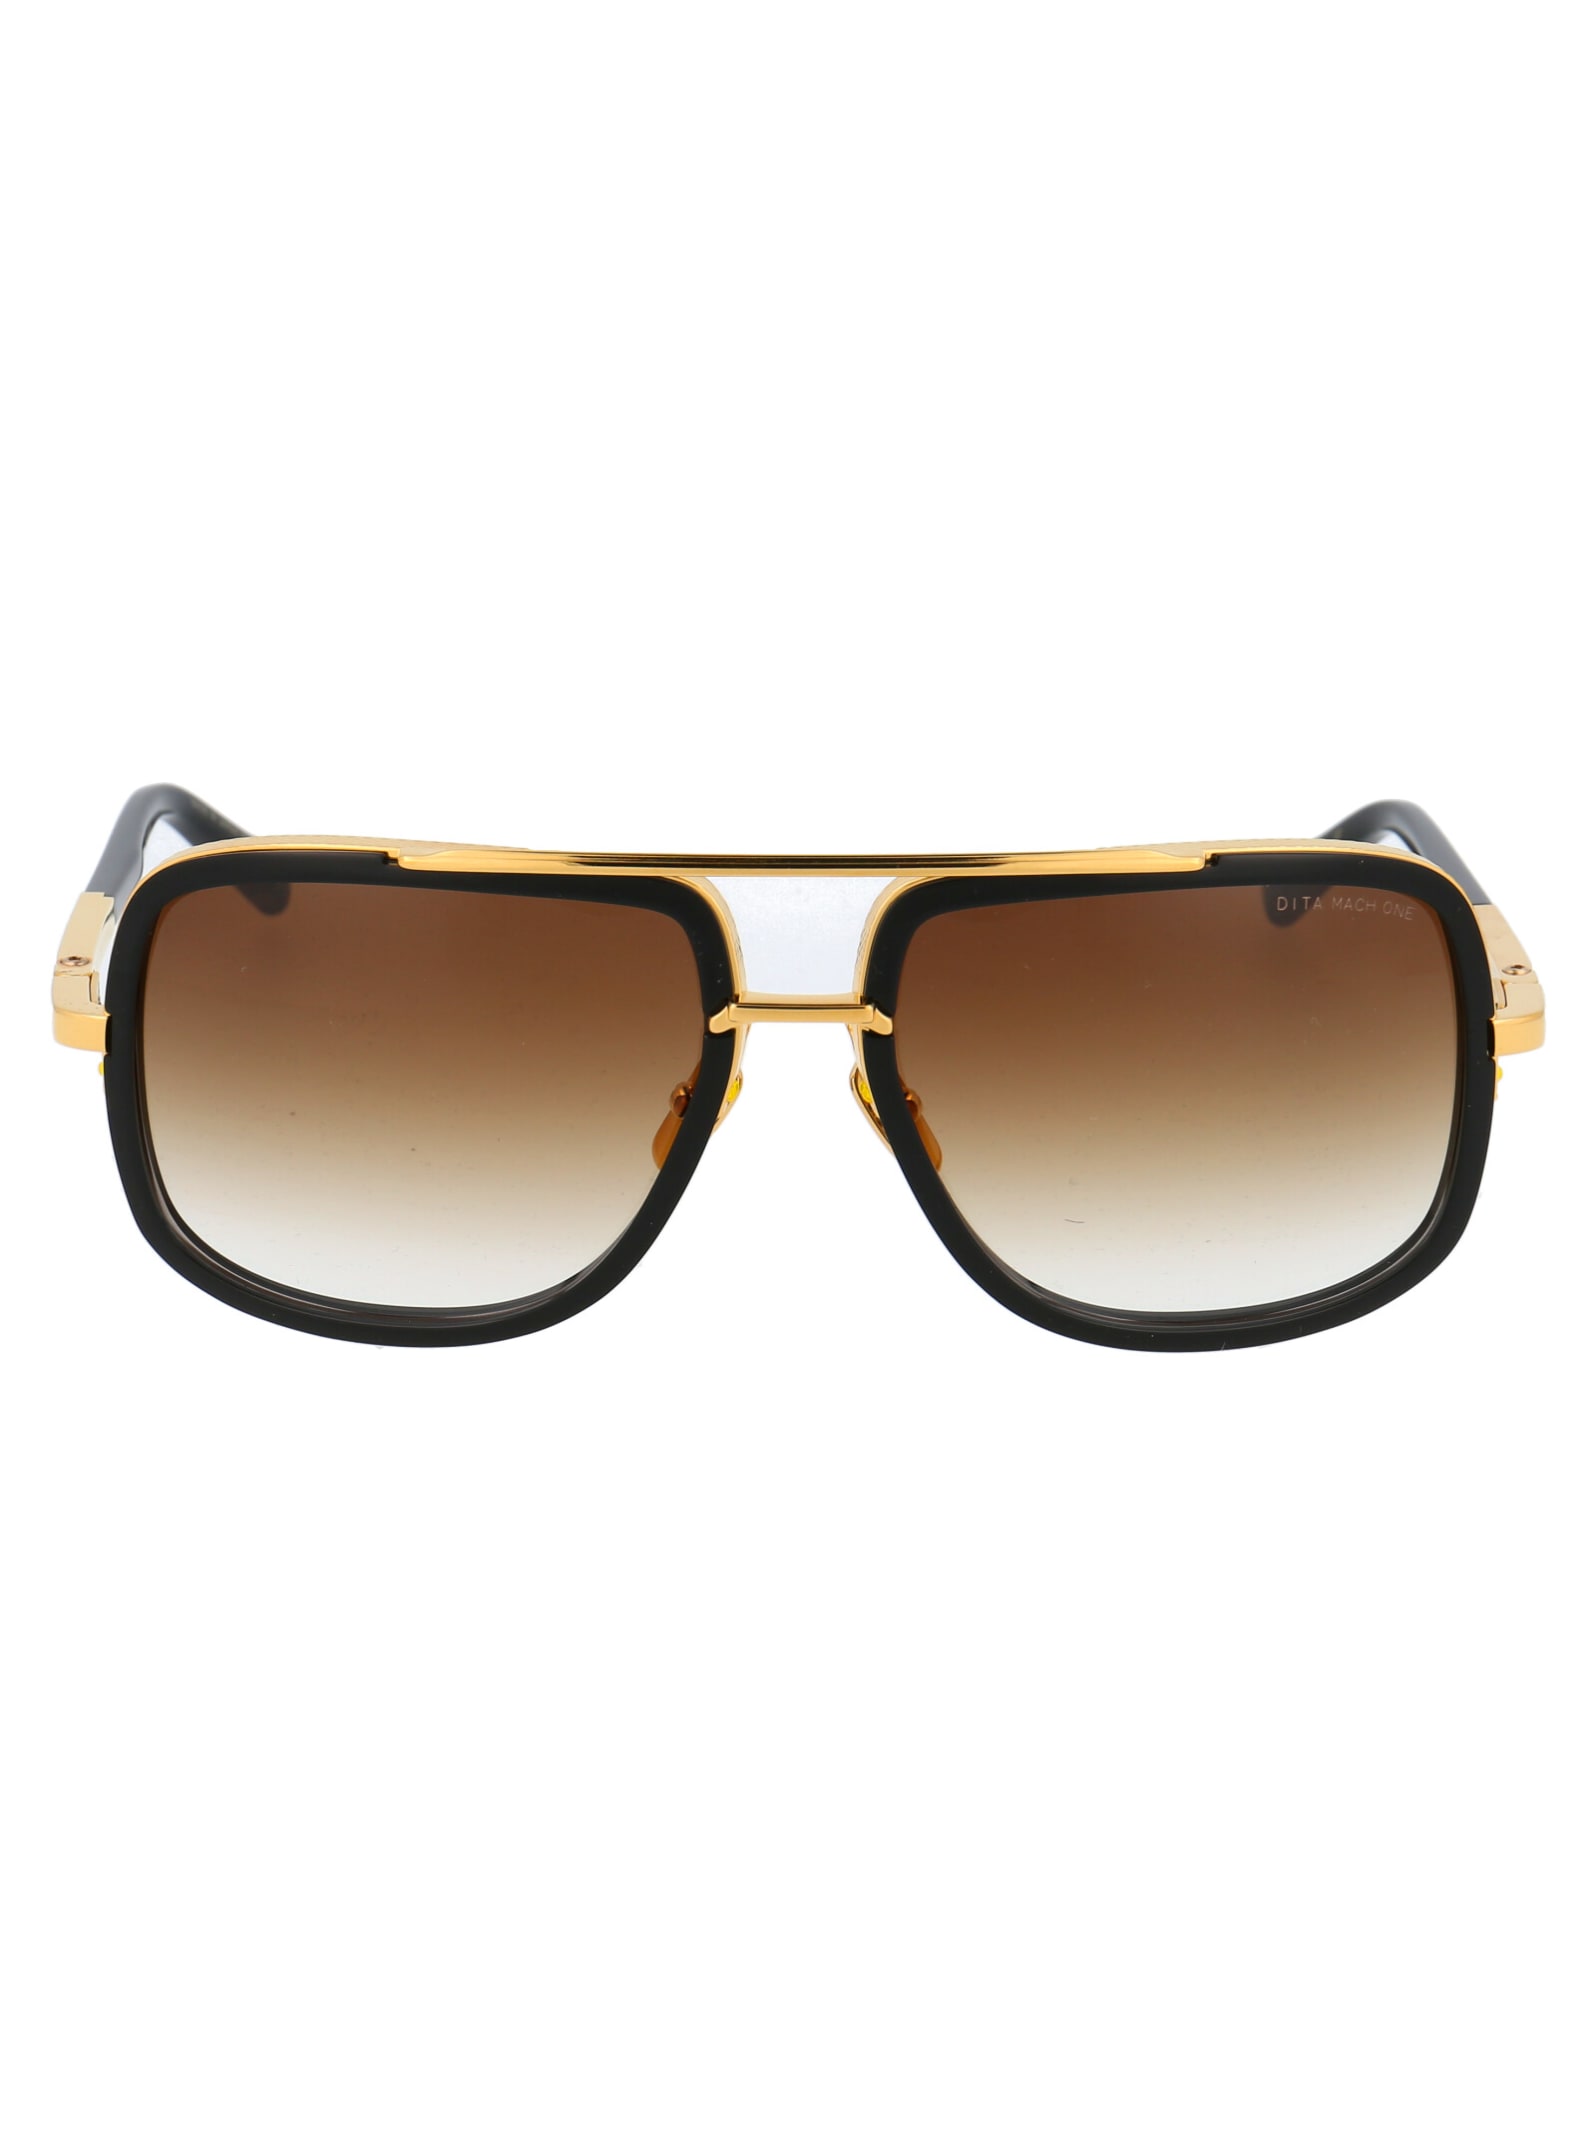 Dita Mach-one Sunglasses